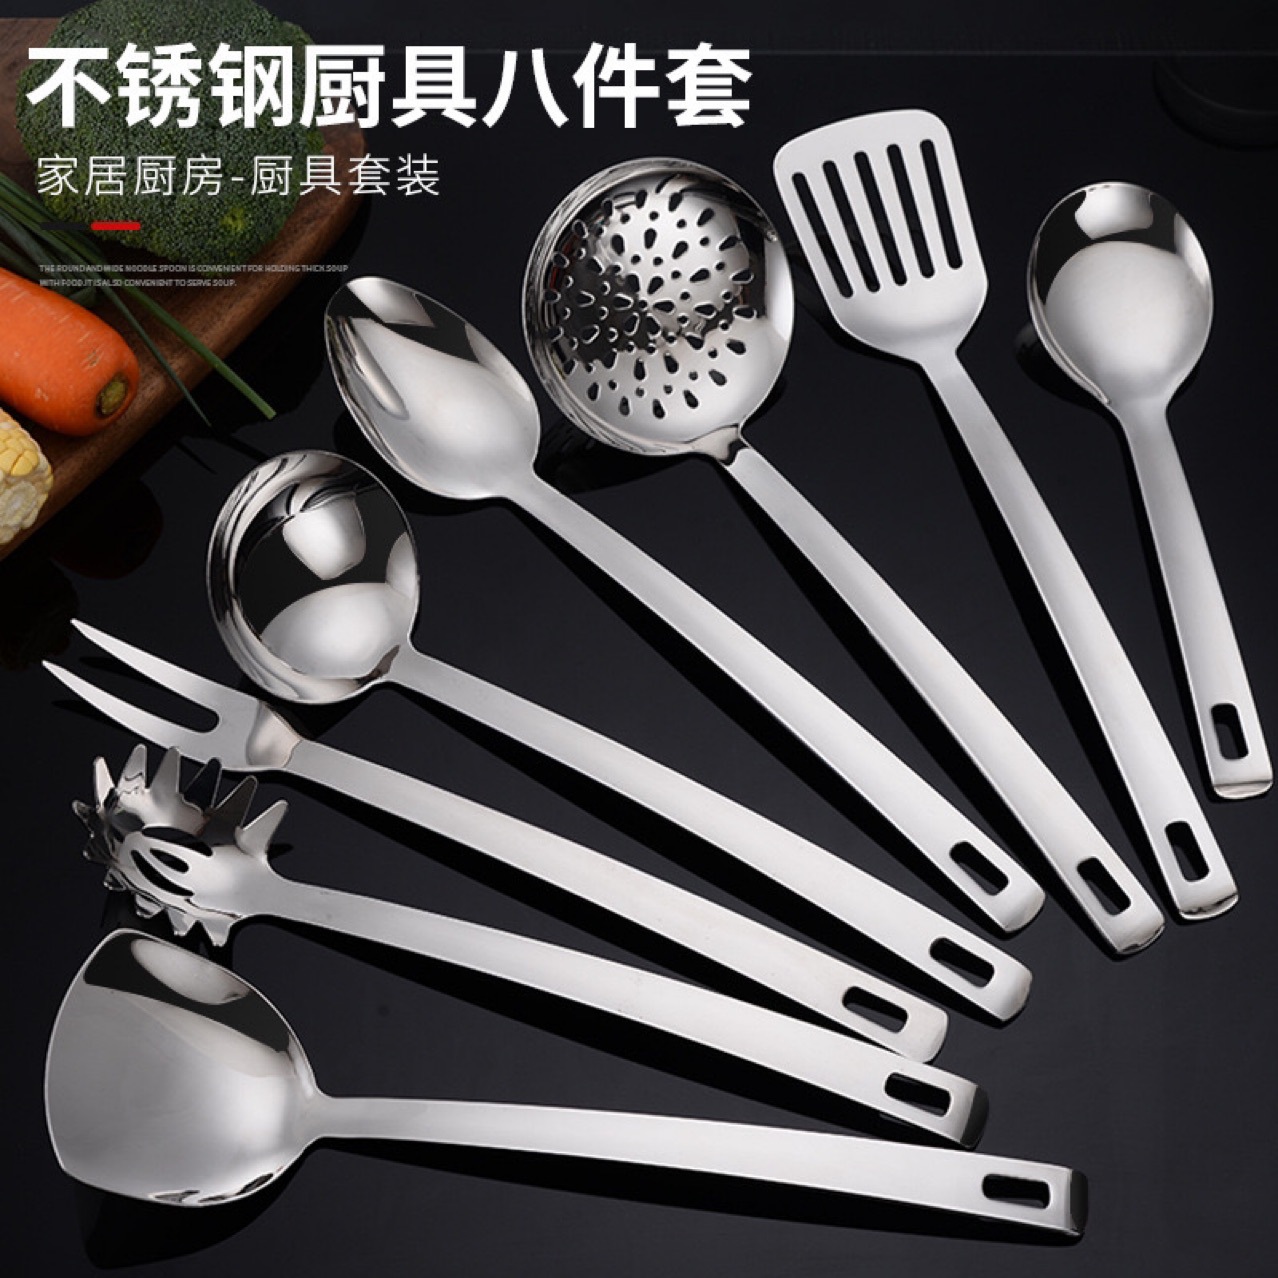 加厚不锈钢厨具套装家用可挂式汤勺漏勺锅铲厨房烹饪用品8件套